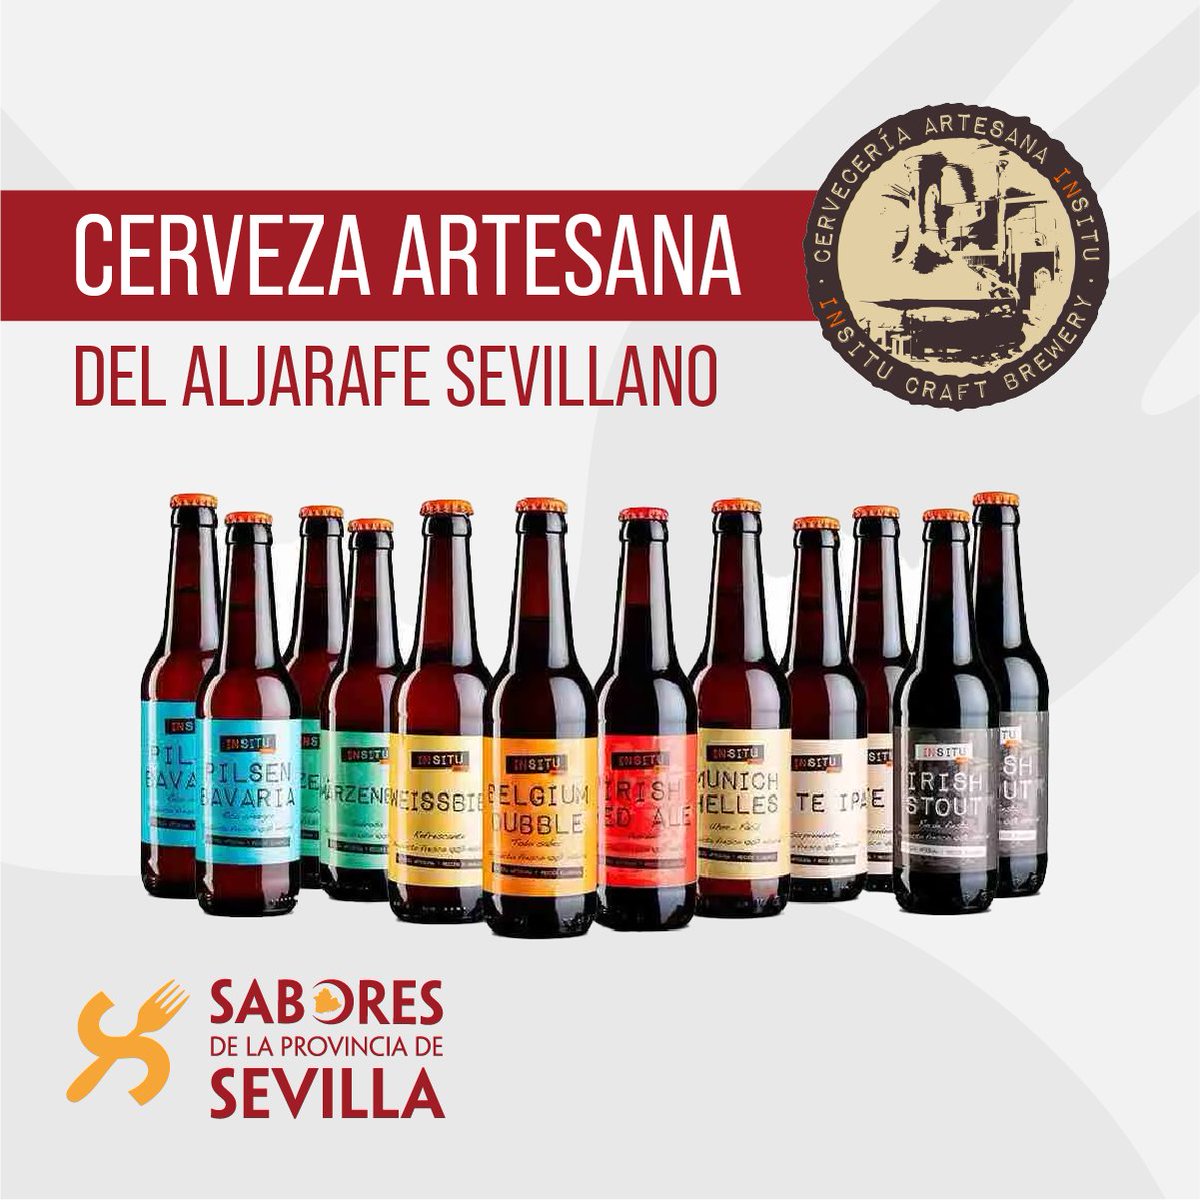 🍻🌿 Descubre el arte cervecero en su máxima expresión con Cervecería Artesana Insitu.

🔝🔝 Espumosa, aromática y con un sabor característico, marca de la casa

🛒 cervezaartesanainsitu.es

#CervezaInSitu #CervezaArtesana #SaborInigualable #SaboresDeLaProvinciaDeSevilla